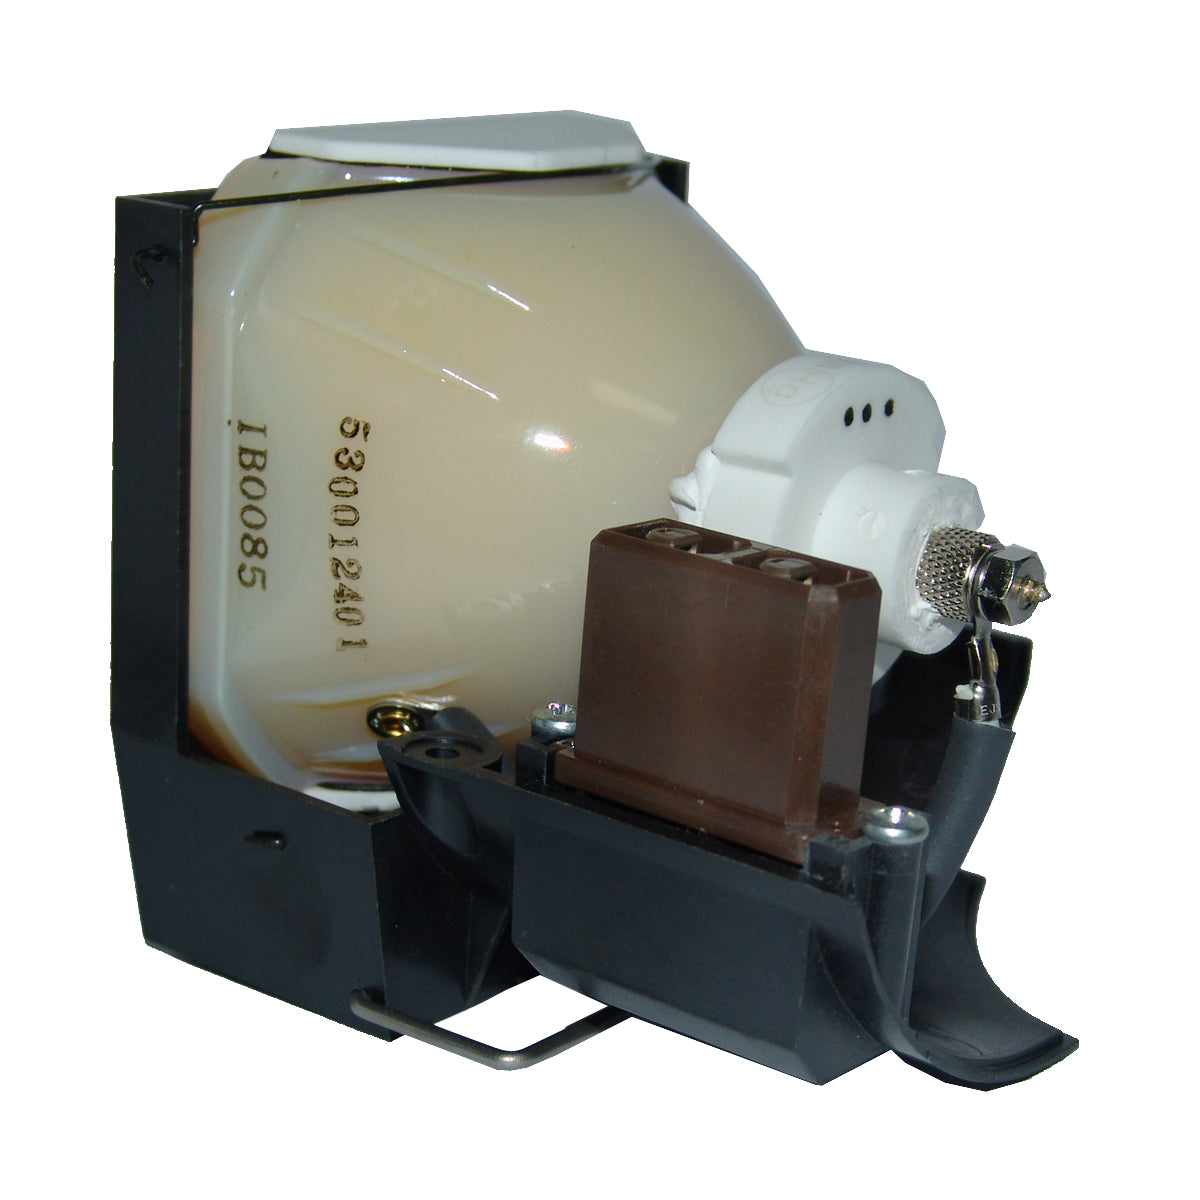 Dukane 456-202 Ushio Projector Lamp Module